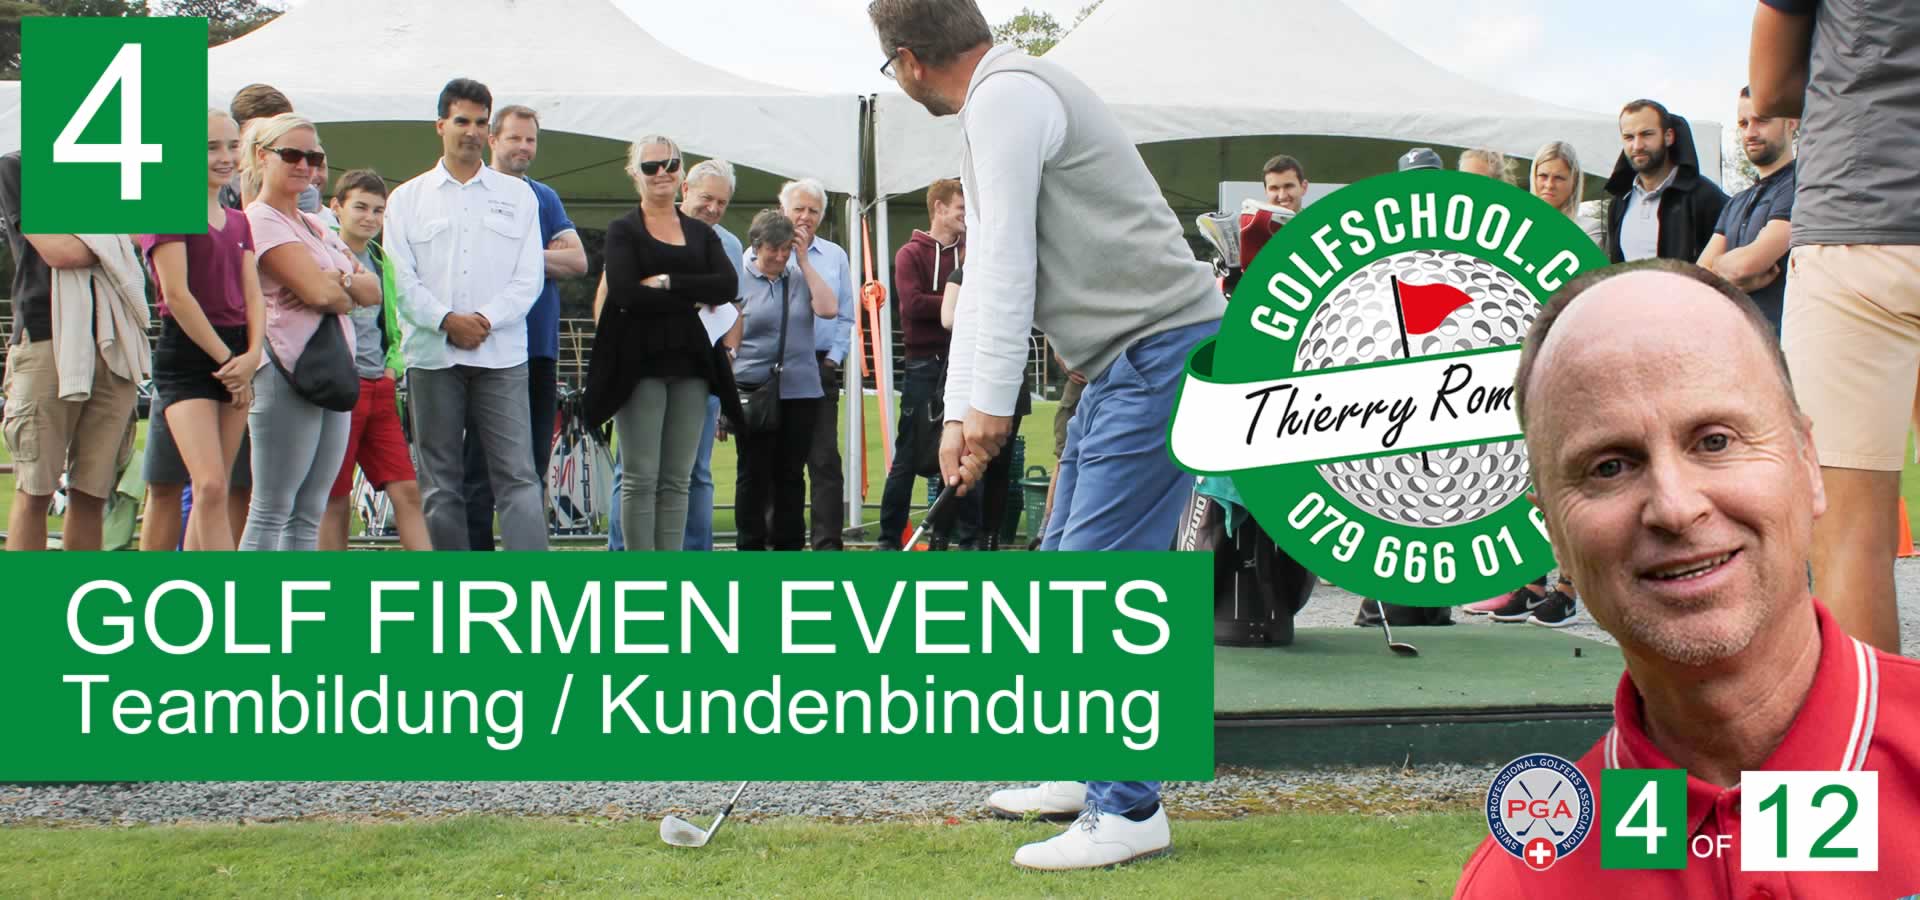 04-Golf-Firmen-Events-Golfevents-Golf-Veranstaltungen-Golfpro-Golflehrer-Zurich-Schweiz-Thierry-Rombaldi